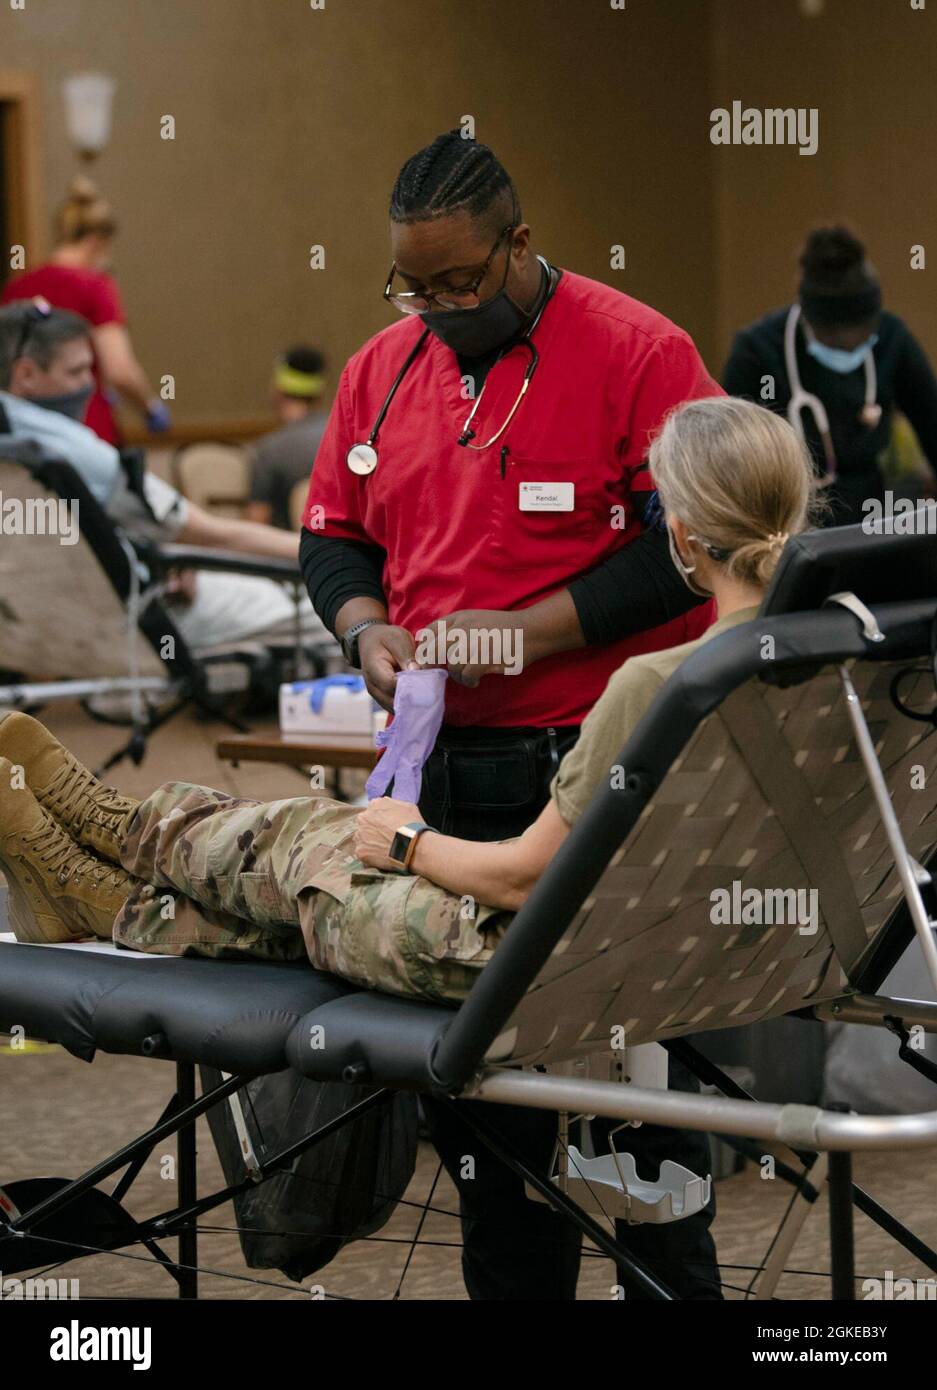 Kendal Benjamin, voluntario de la Cruz Roja, se prepara para extraer sangre del general mayor Jami C. Shawley, comandante de la División de Preparación 81st, marzo de 29 en una unidad comunitaria de sangre llevada a cabo en el Club NCO. Foto de stock